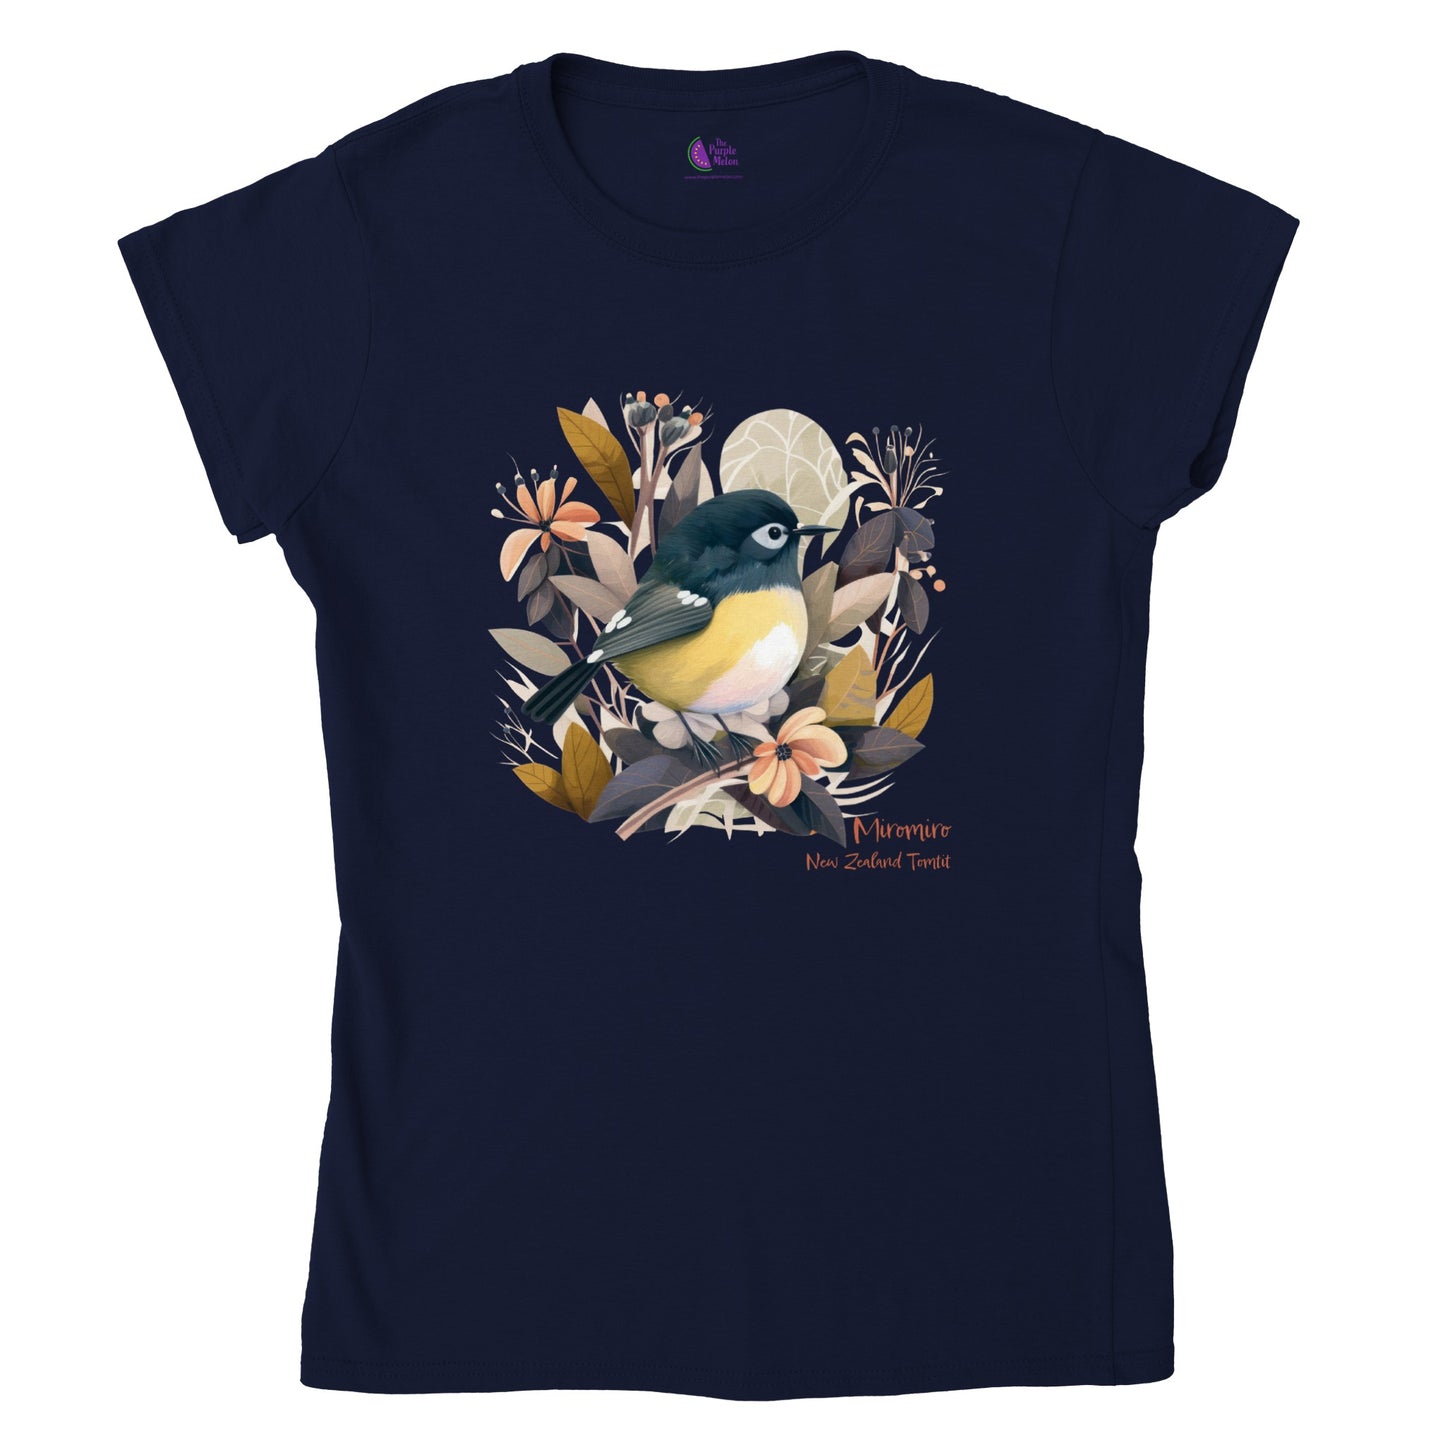 Navy t-shirt with a New Zealand Miromiro tomtit bird print